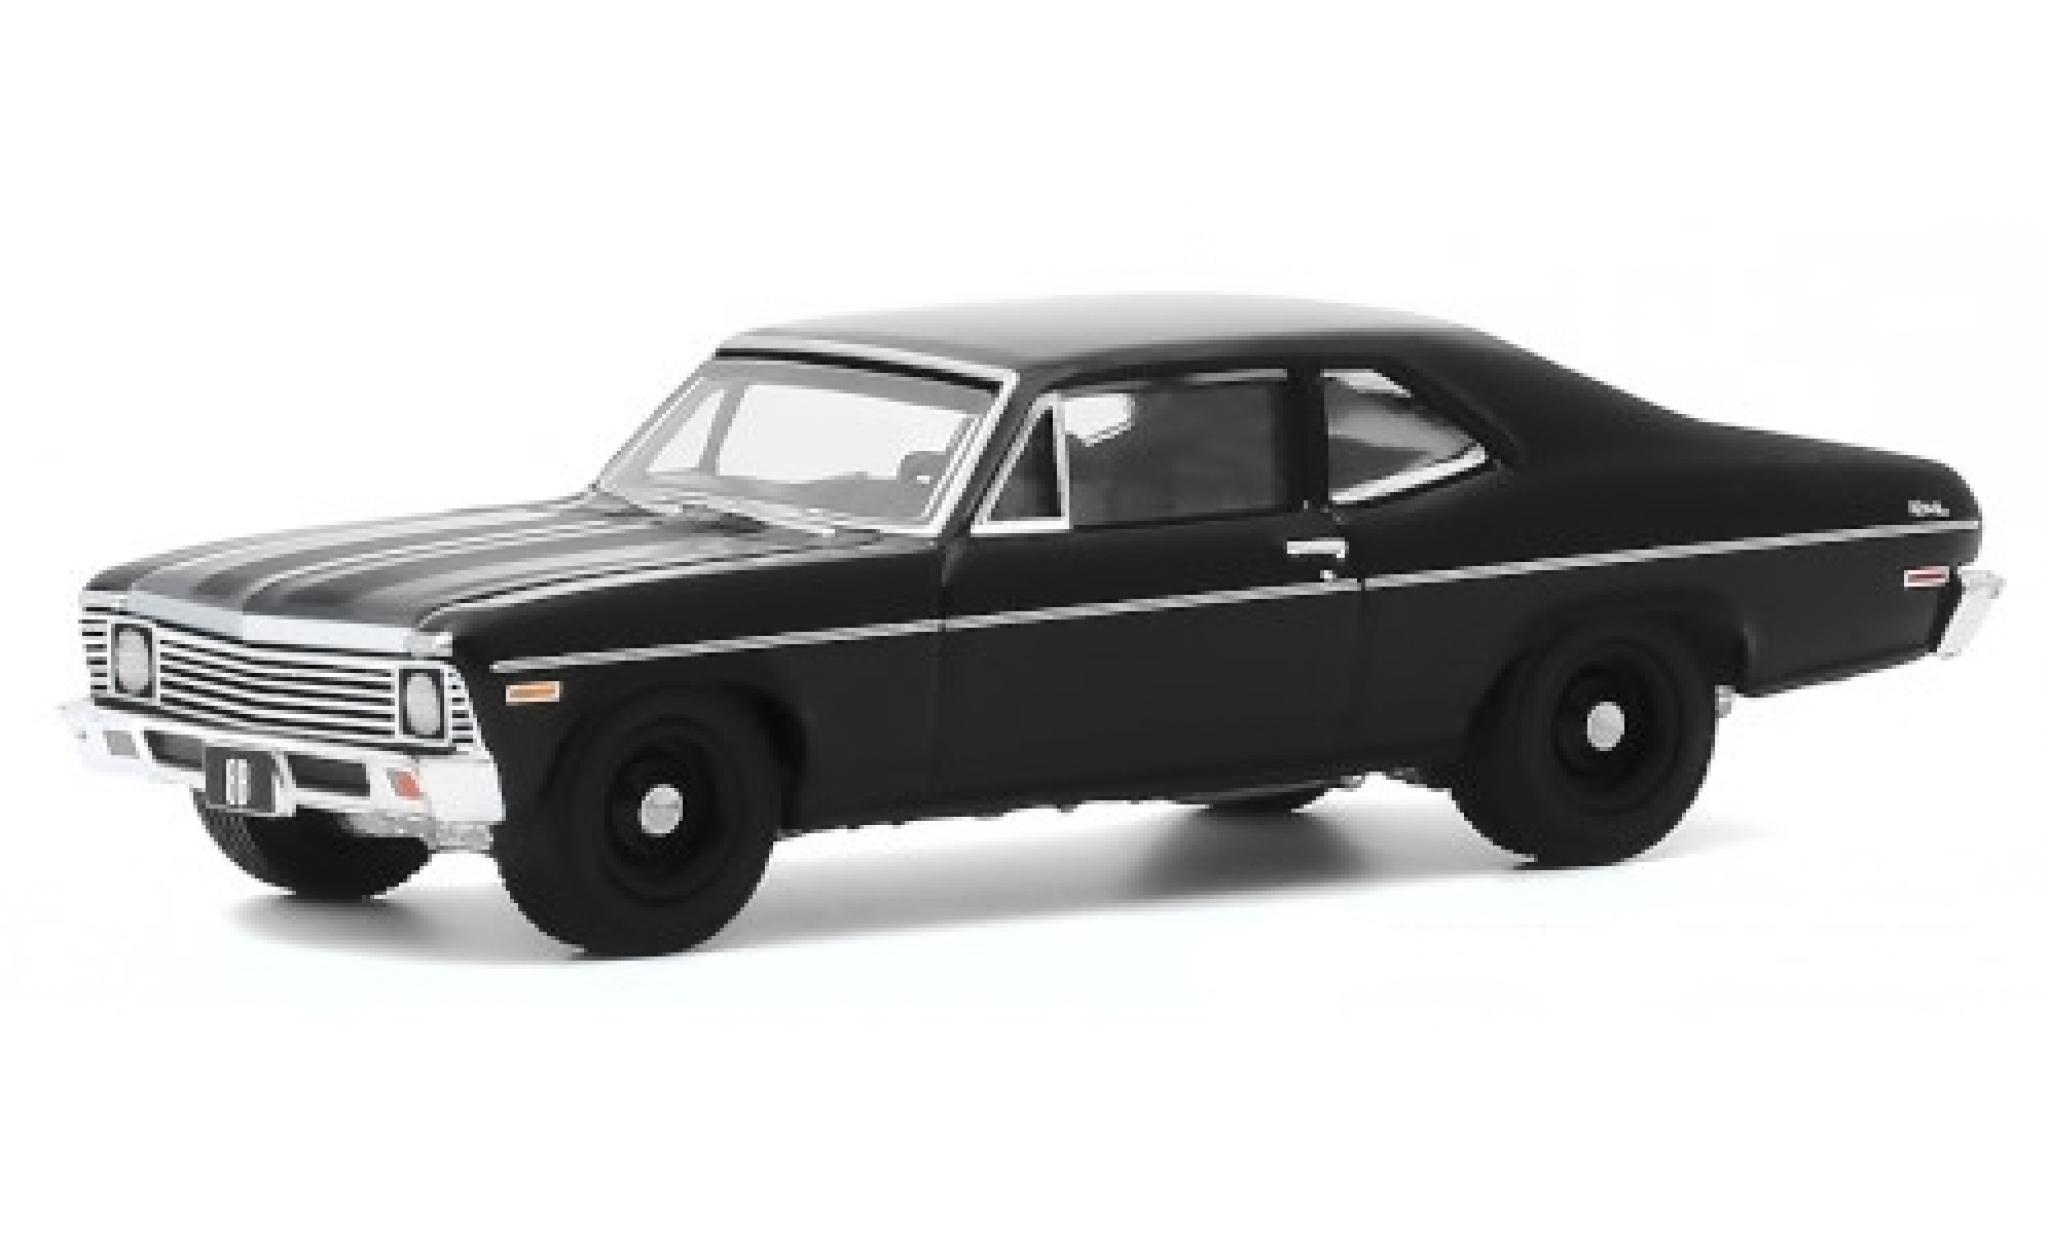 Chevrolet Nova 1/64 Greenlight black 1968